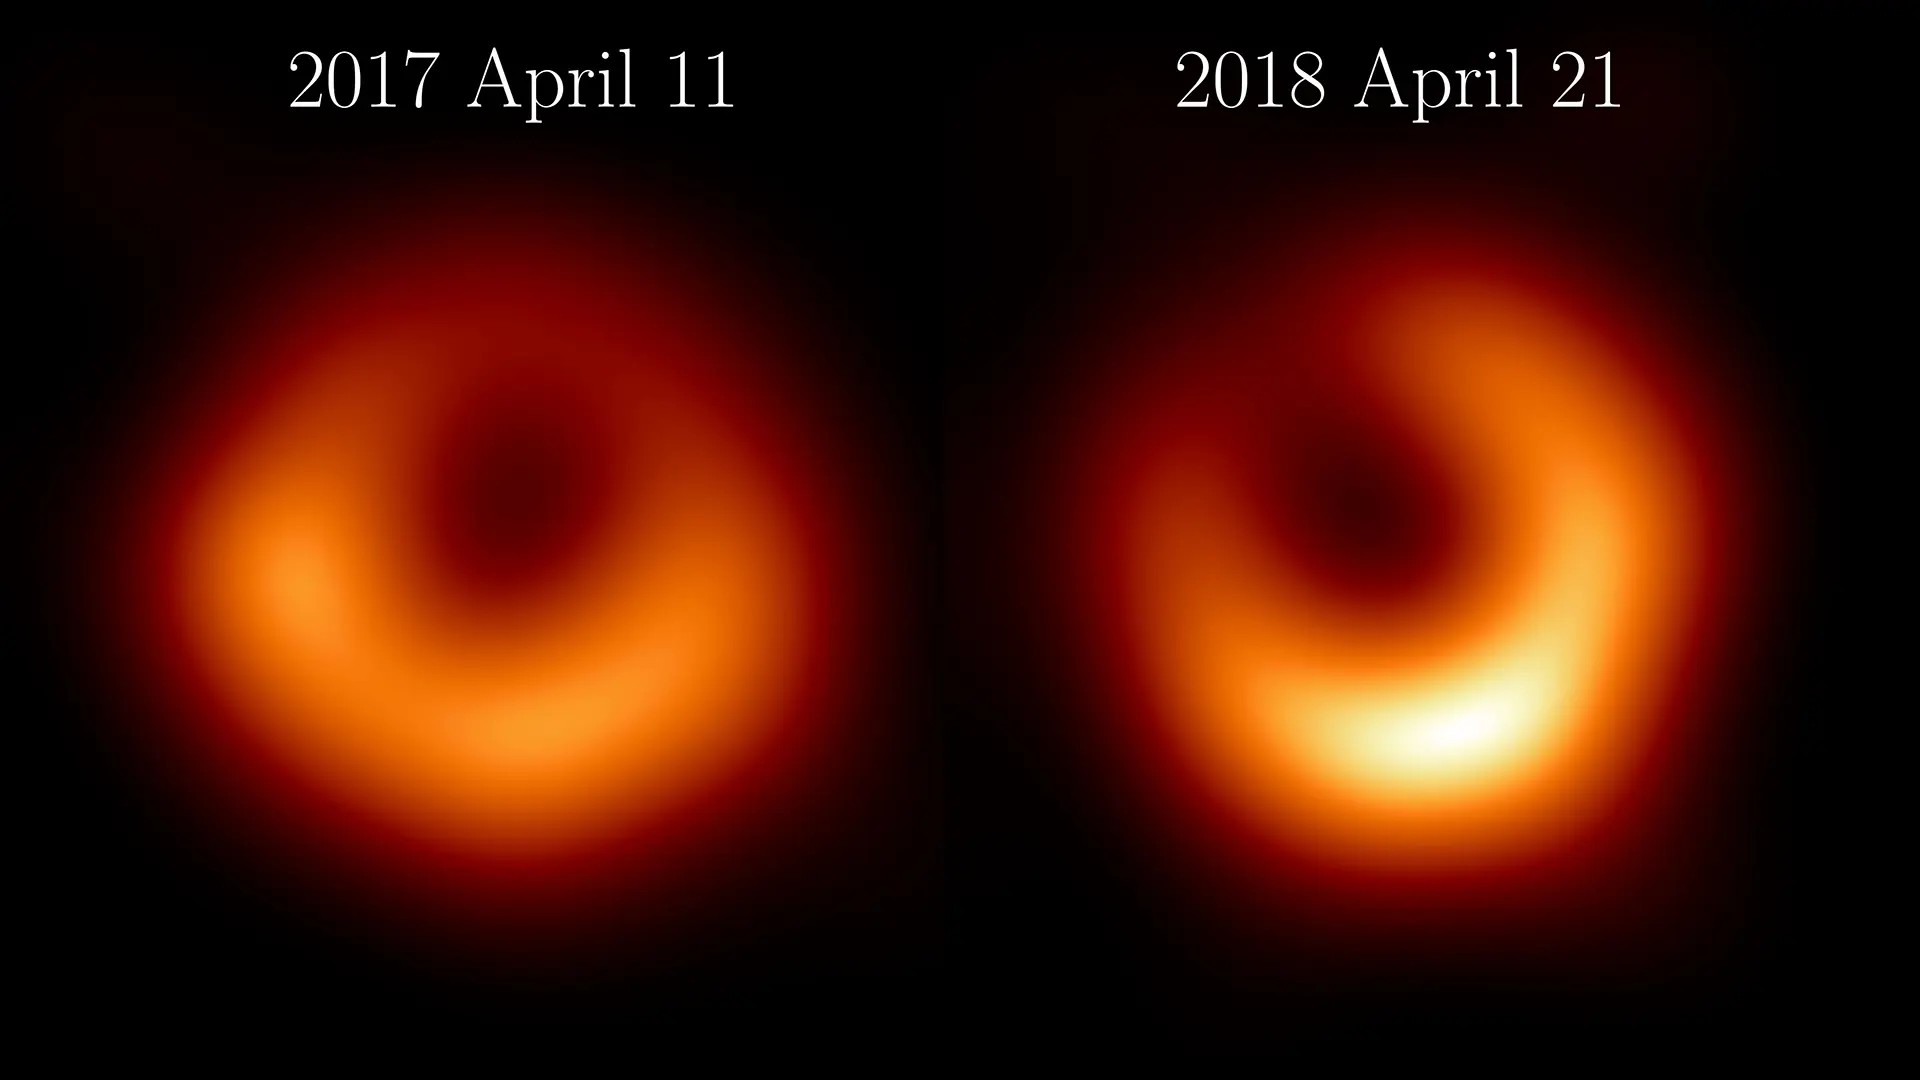 Två bilder på svarta hålet i M87, tagna 2017 och 2018